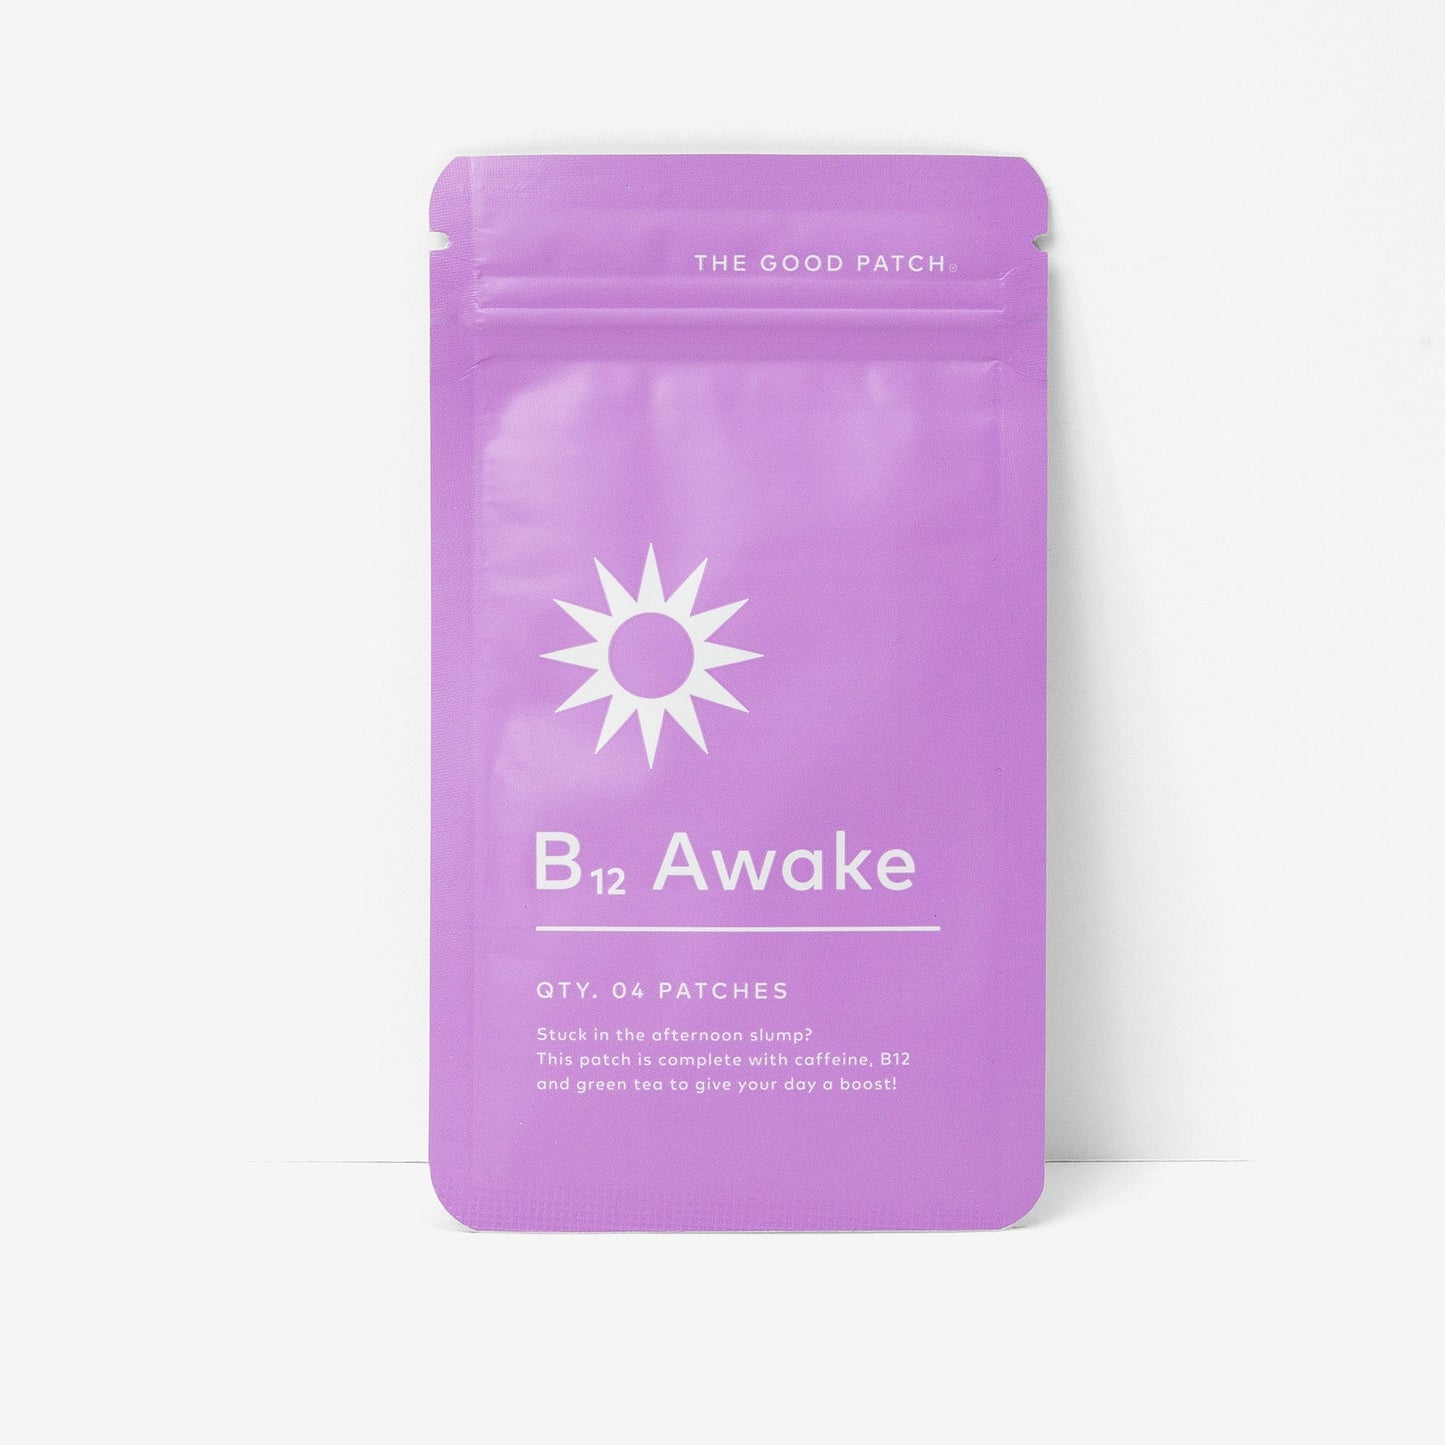 B12 Awake - 4 count